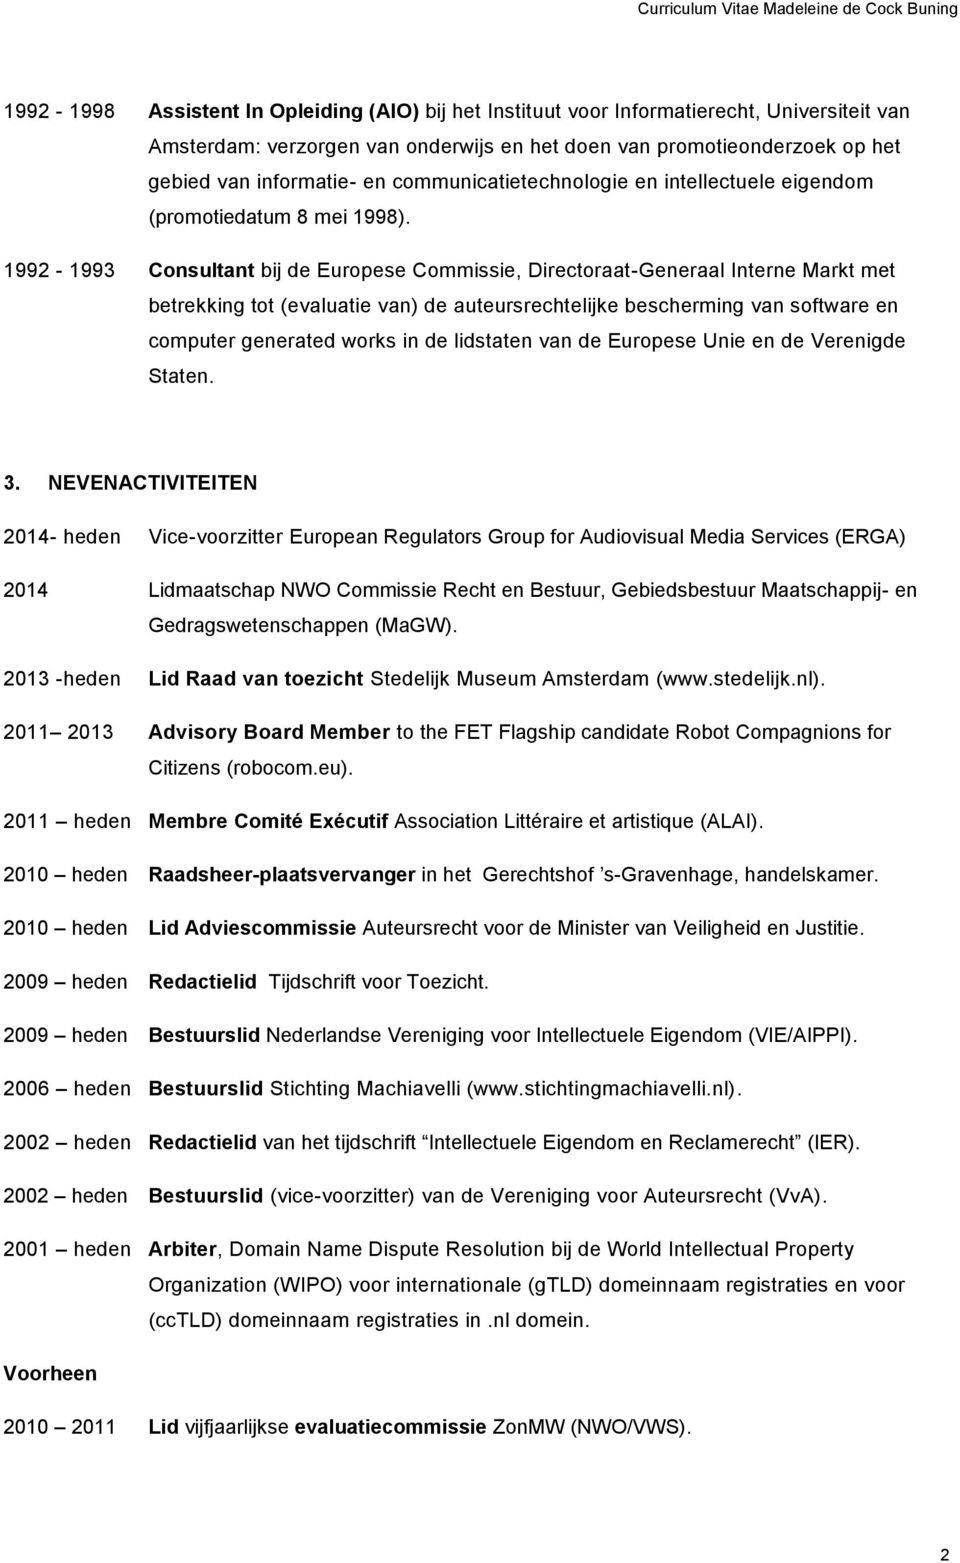 1992-1993 Consultant bij de Europese Commissie, Directoraat-Generaal Interne Markt met betrekking tot (evaluatie van) de auteursrechtelijke bescherming van software en computer generated works in de